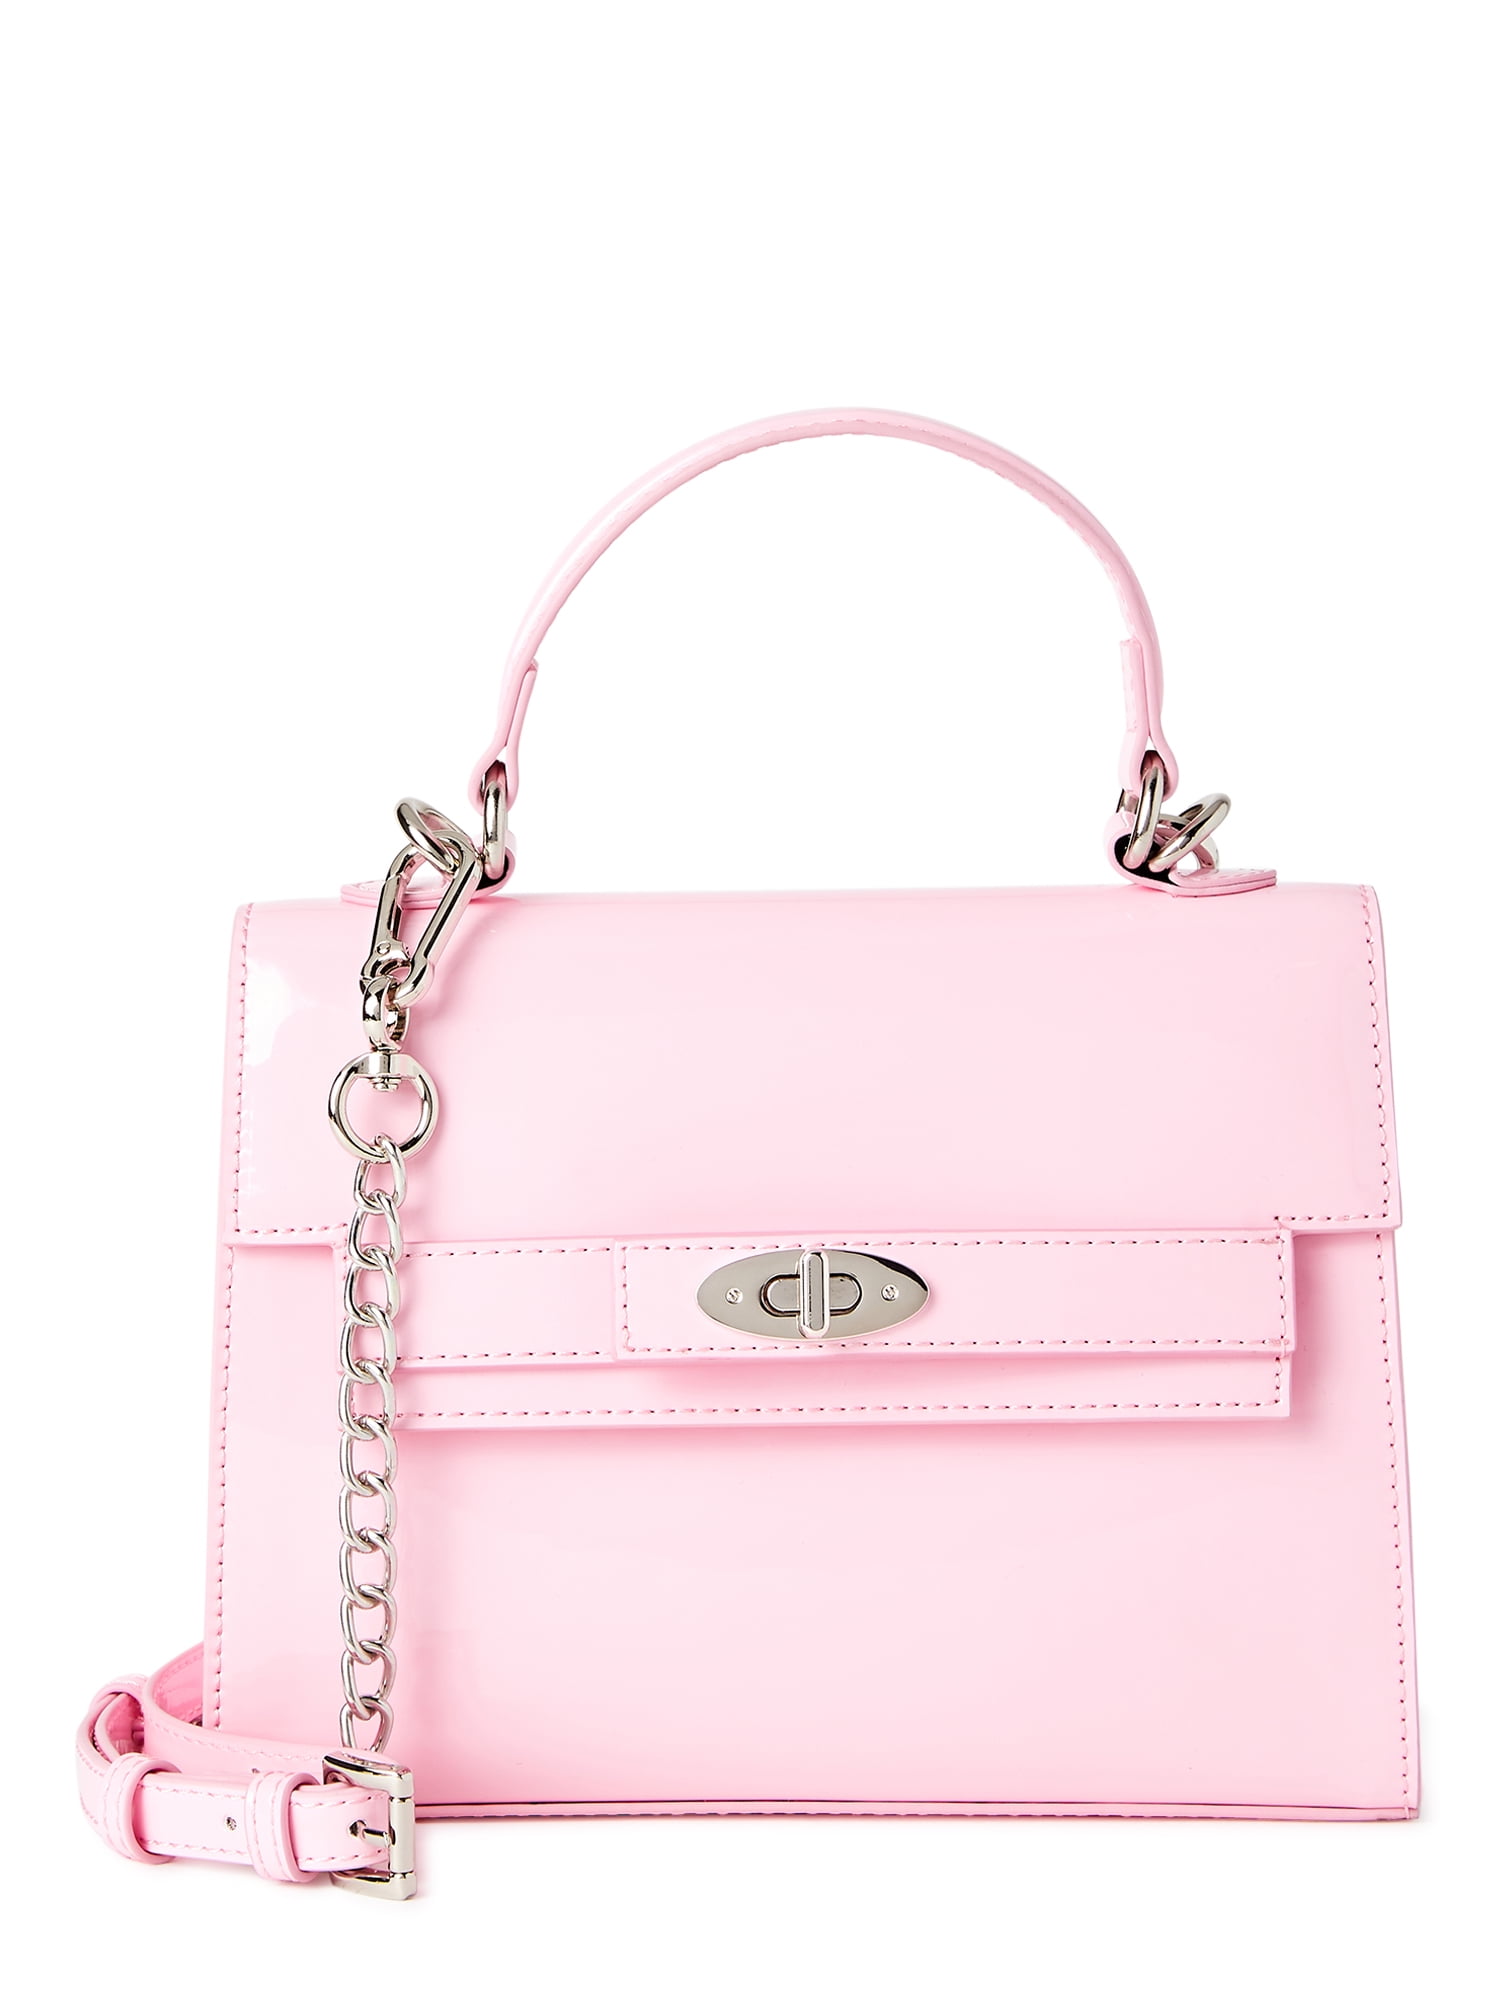 light pink bag